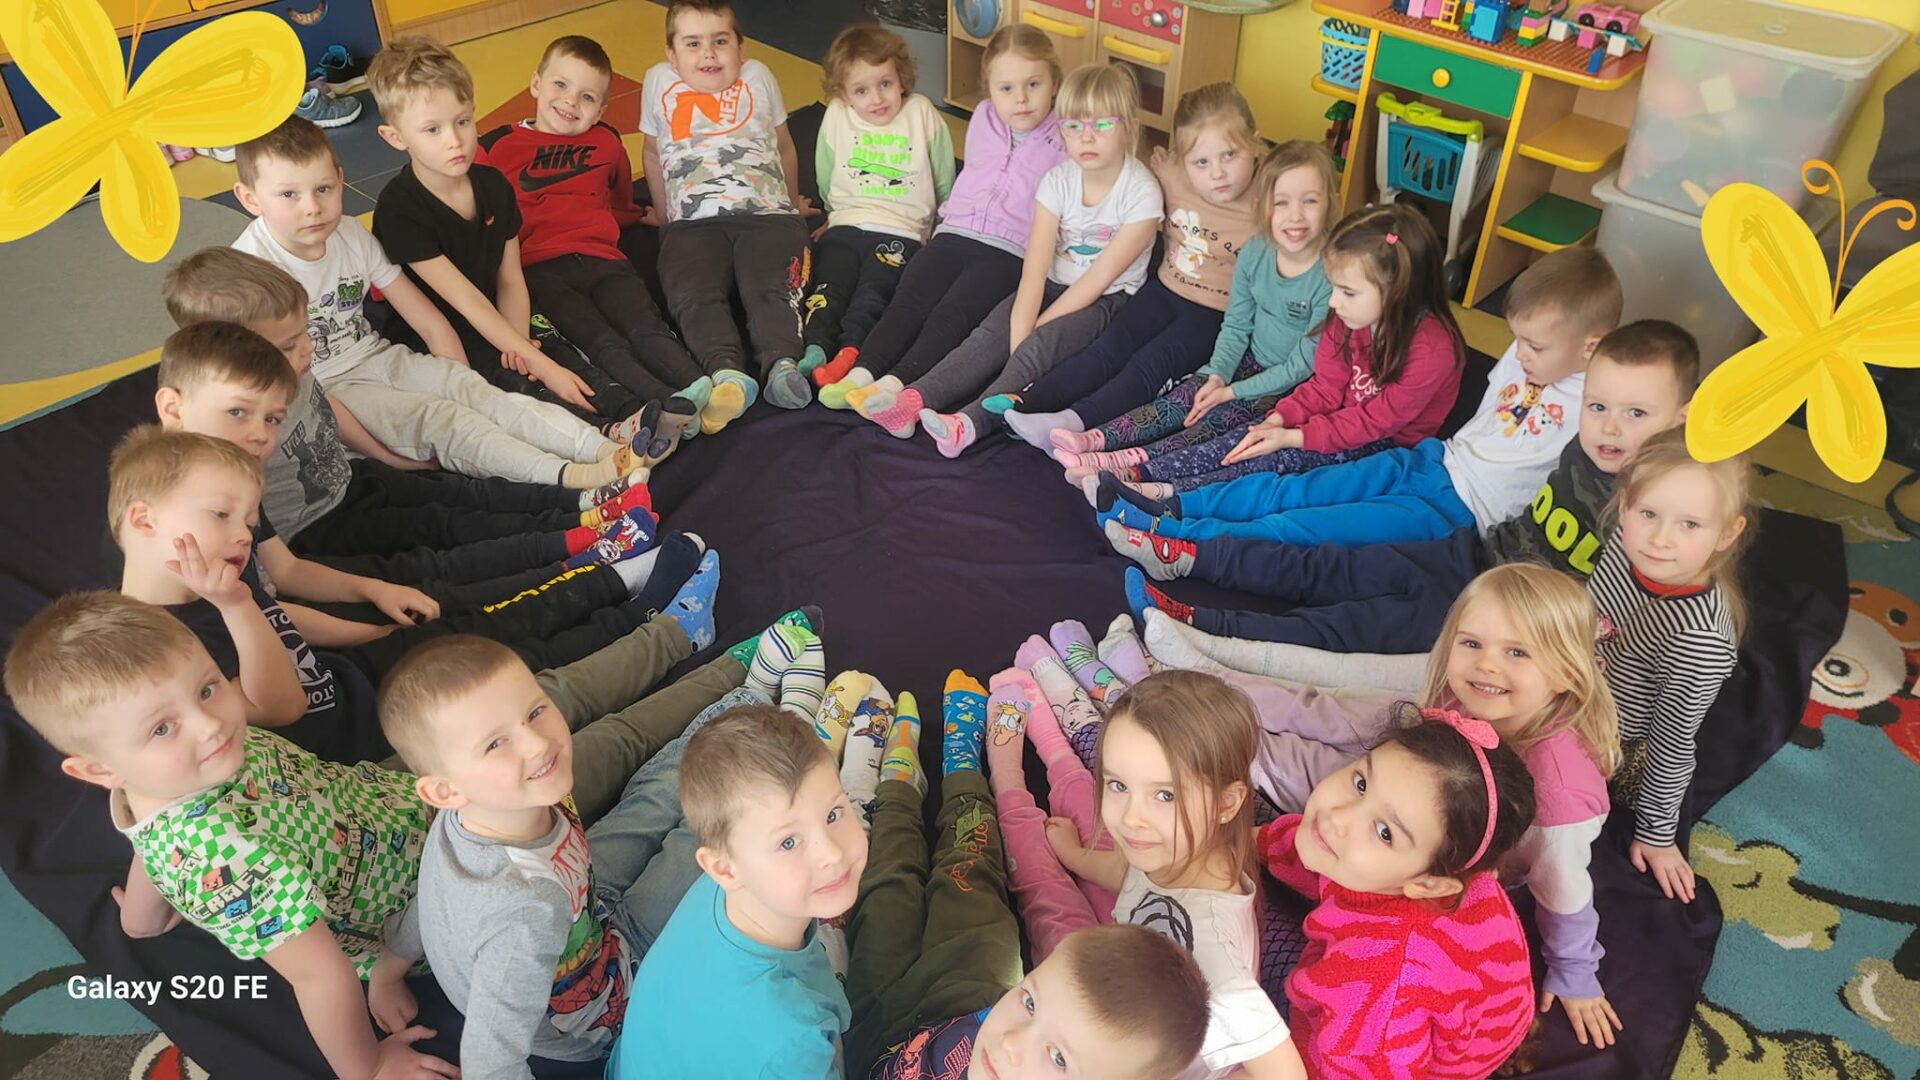 przedszkolaki w kóeczku na podłodze, demonstrują kolorowe skarpetki nie do pary